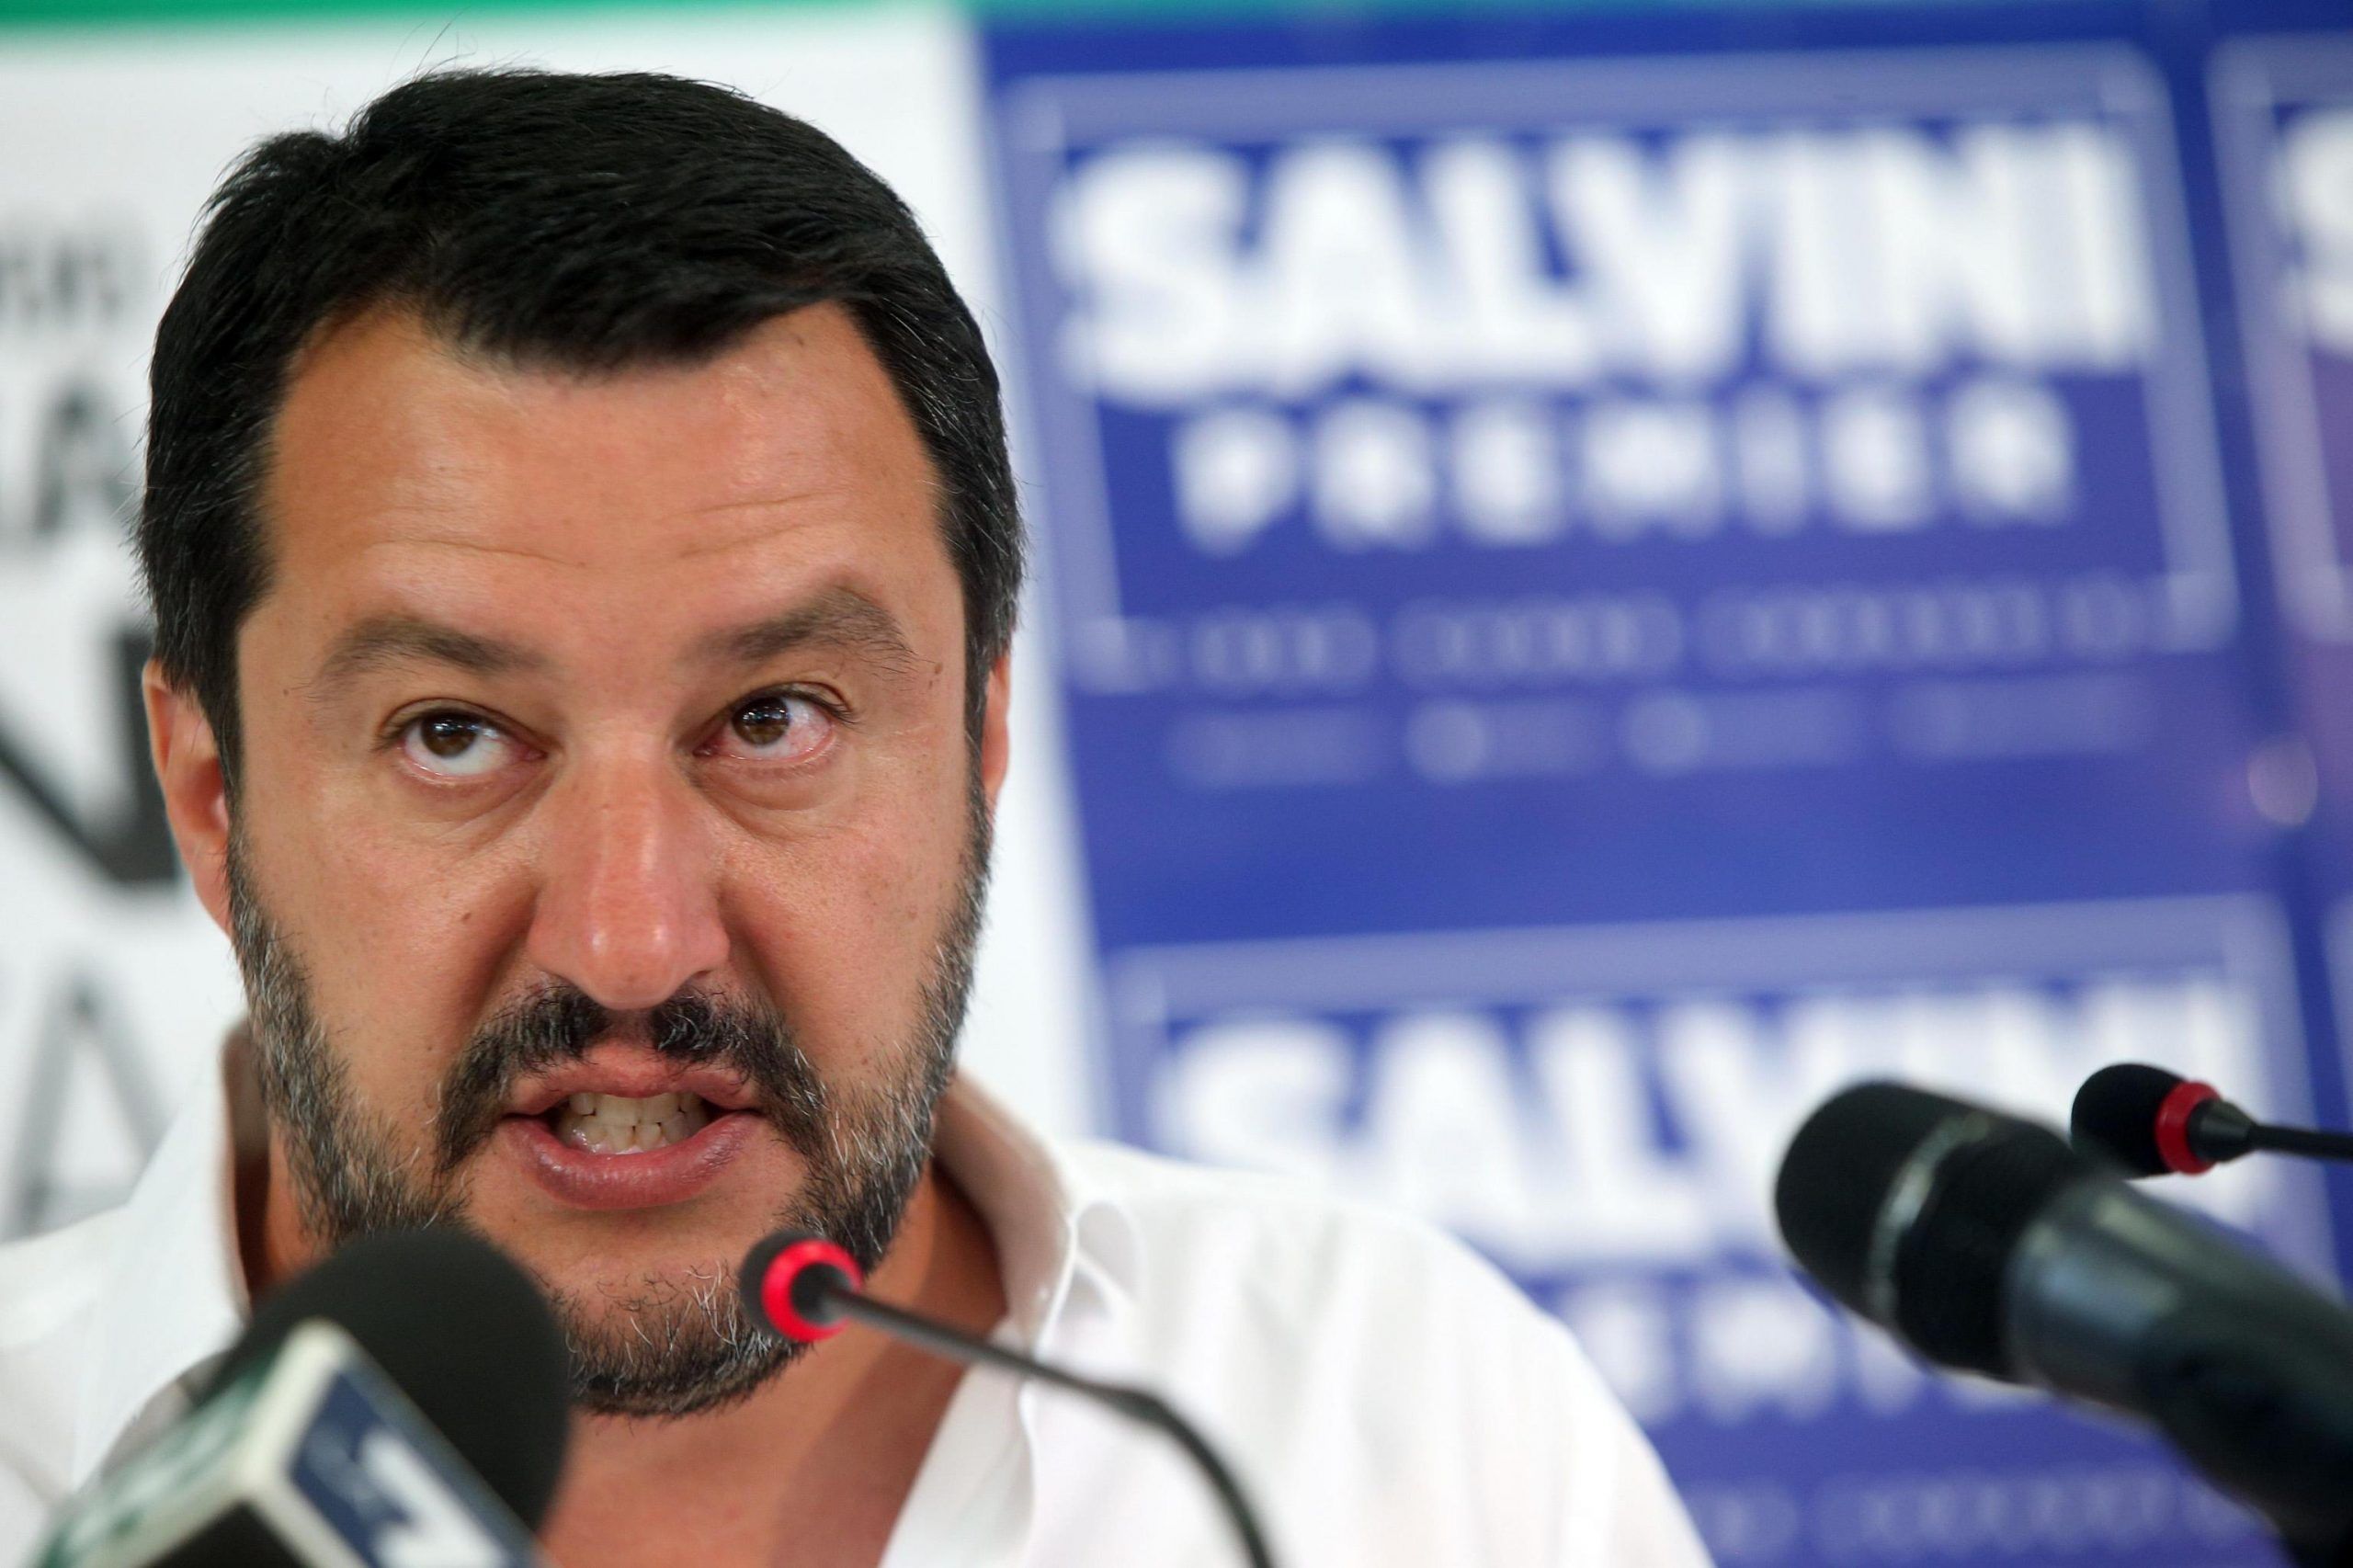 ++ Salvini, faremo di tutto per coalizione compatta ++